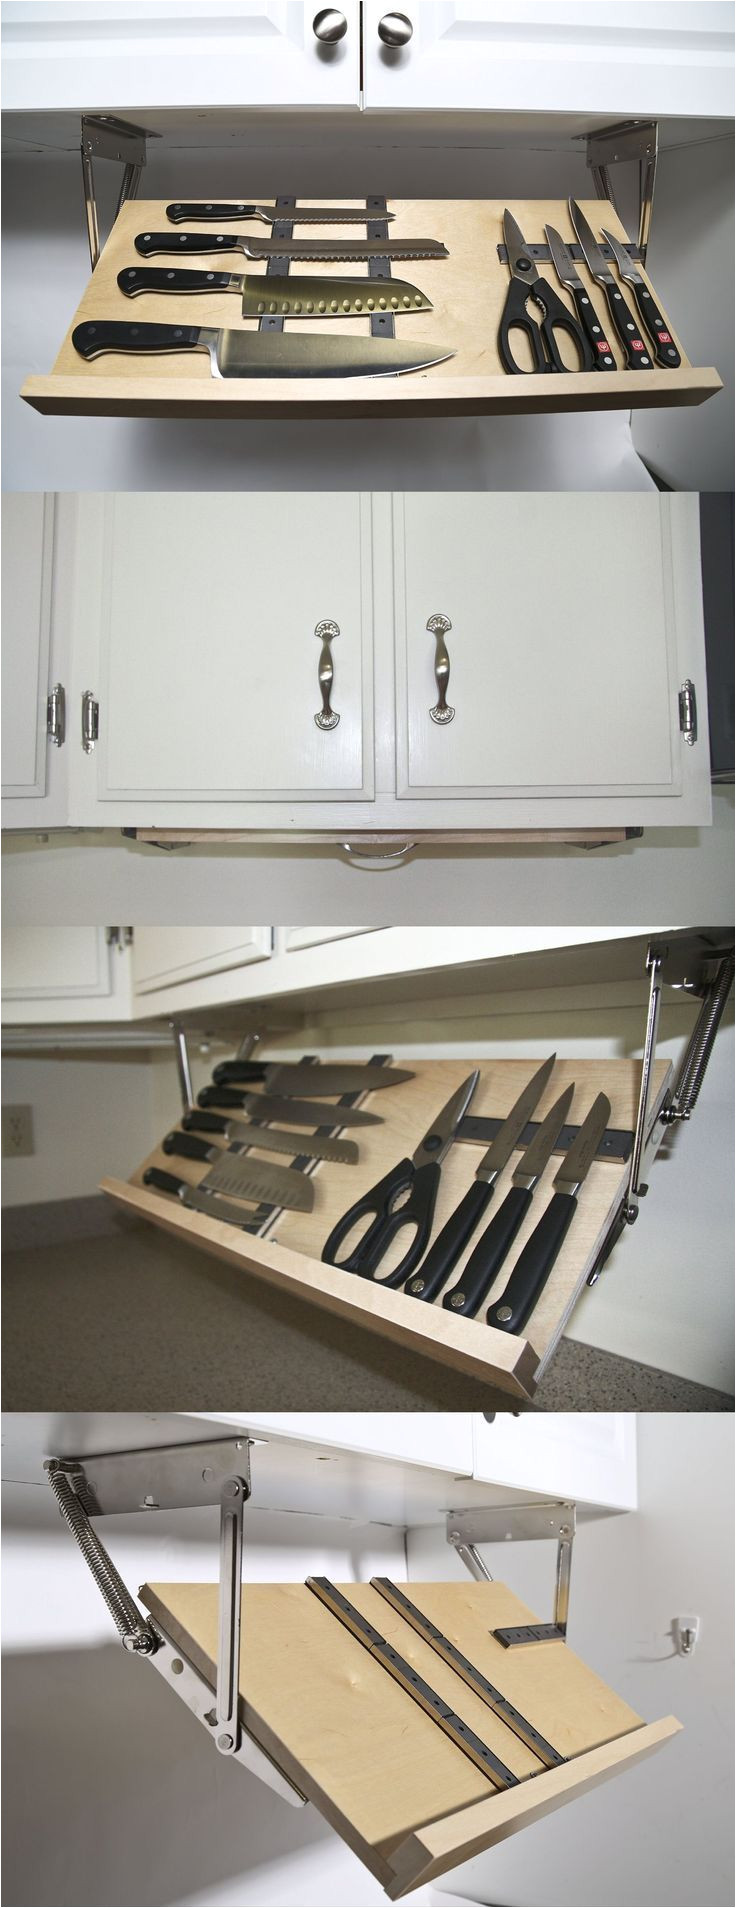 under cabinet knife storage love this seems much safer